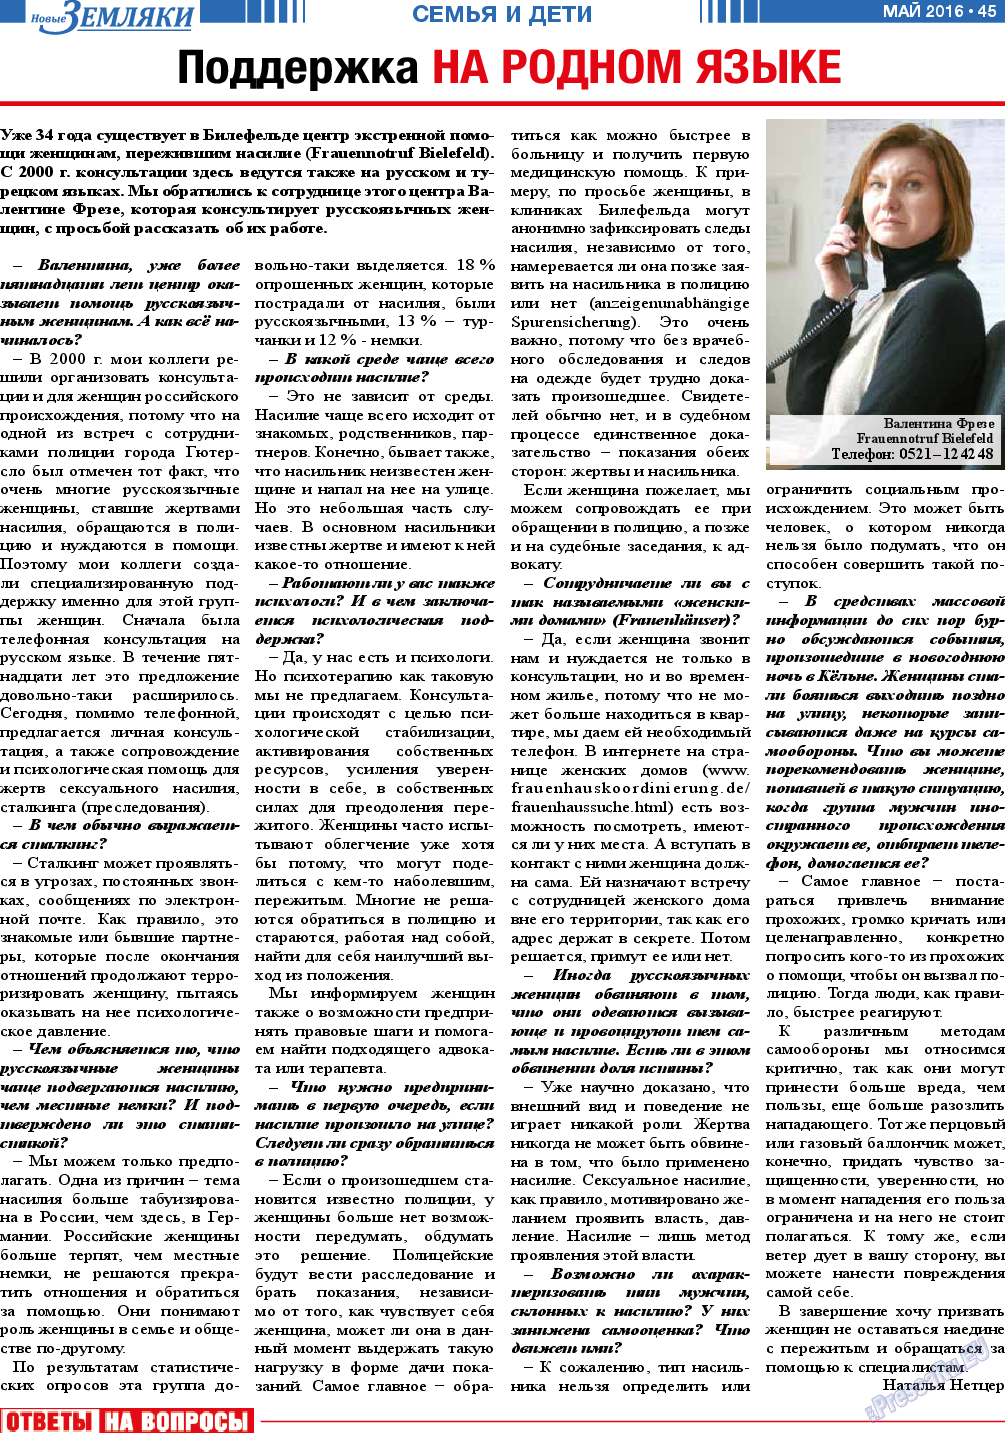 Новые Земляки, газета. 2016 №5 стр.45